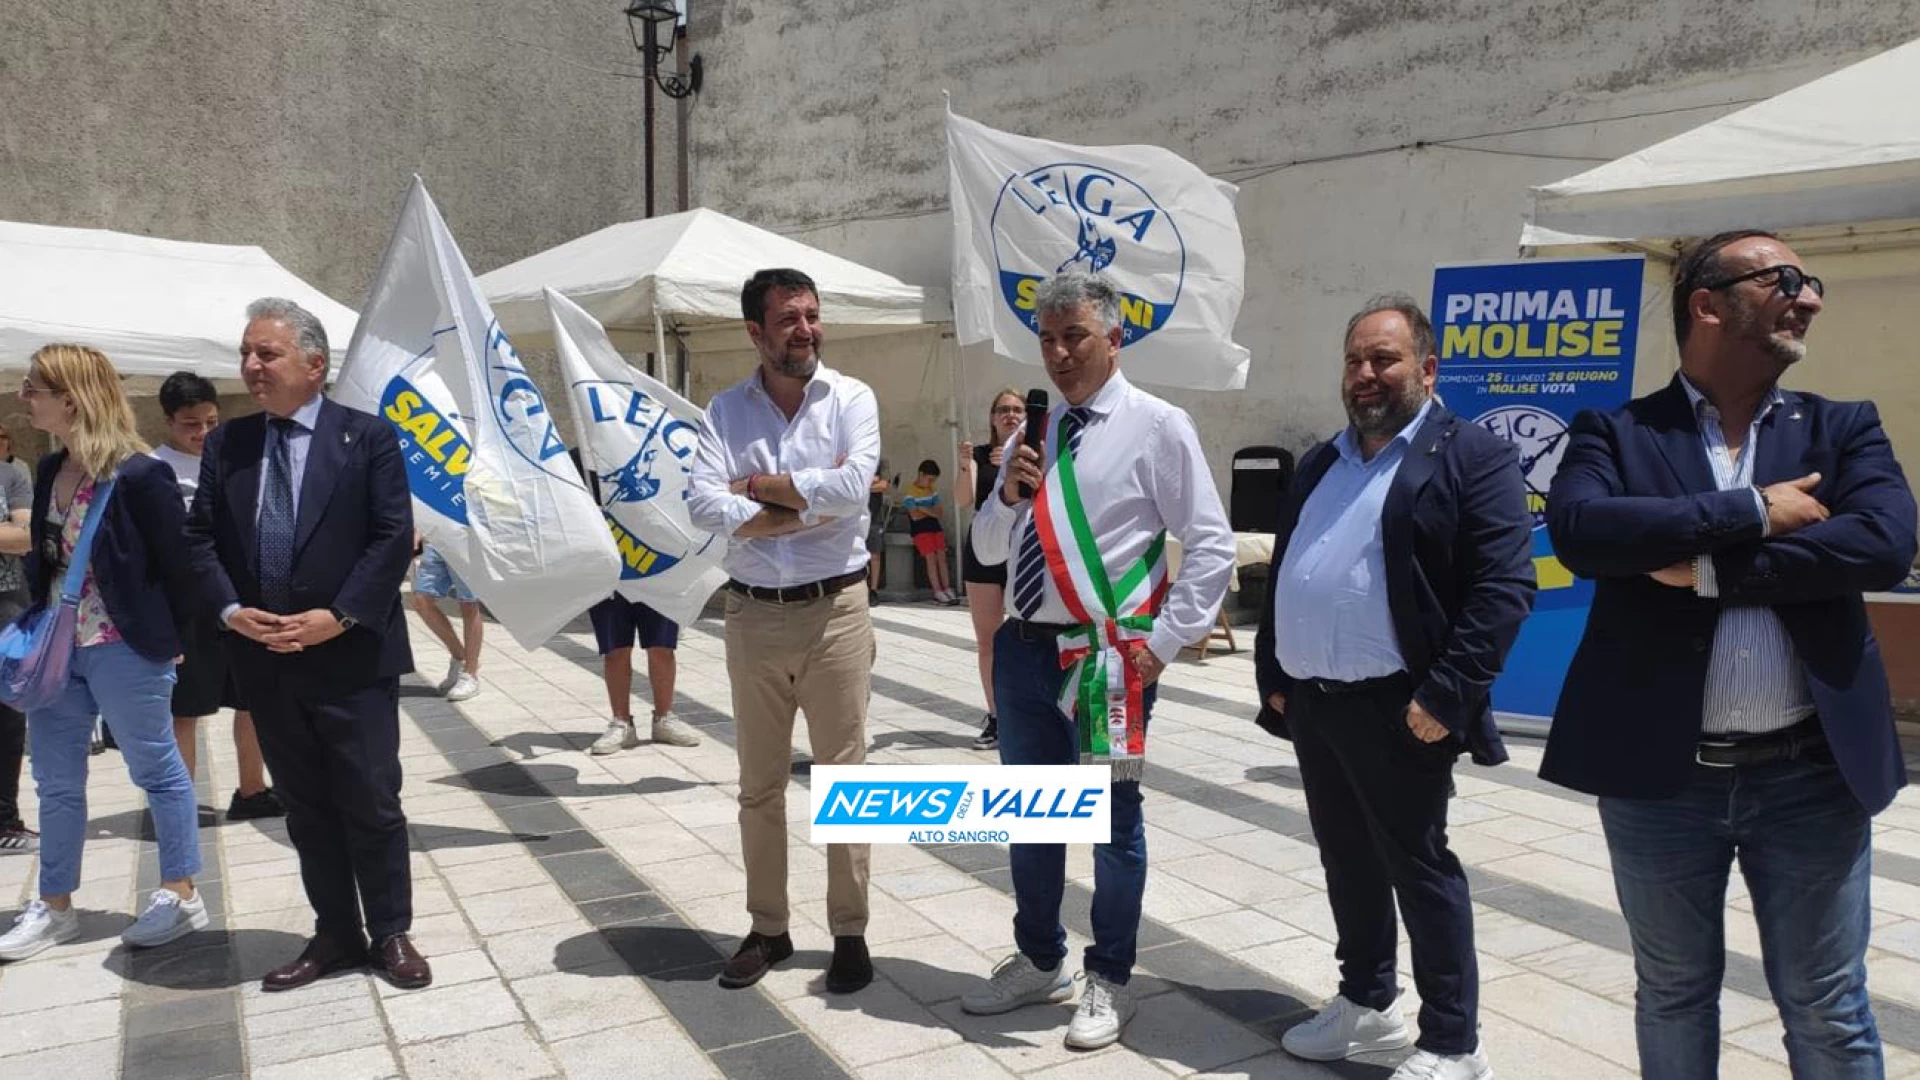 Salvini per la seconda volta in pochi anni in visita a Rionero Sannitico. Tour per il paese ed incontro in piazza con gli elettori per il Ministro. “Ho un grande piacere nel tornare in quest’area del Molise”. Guarda il servizio.